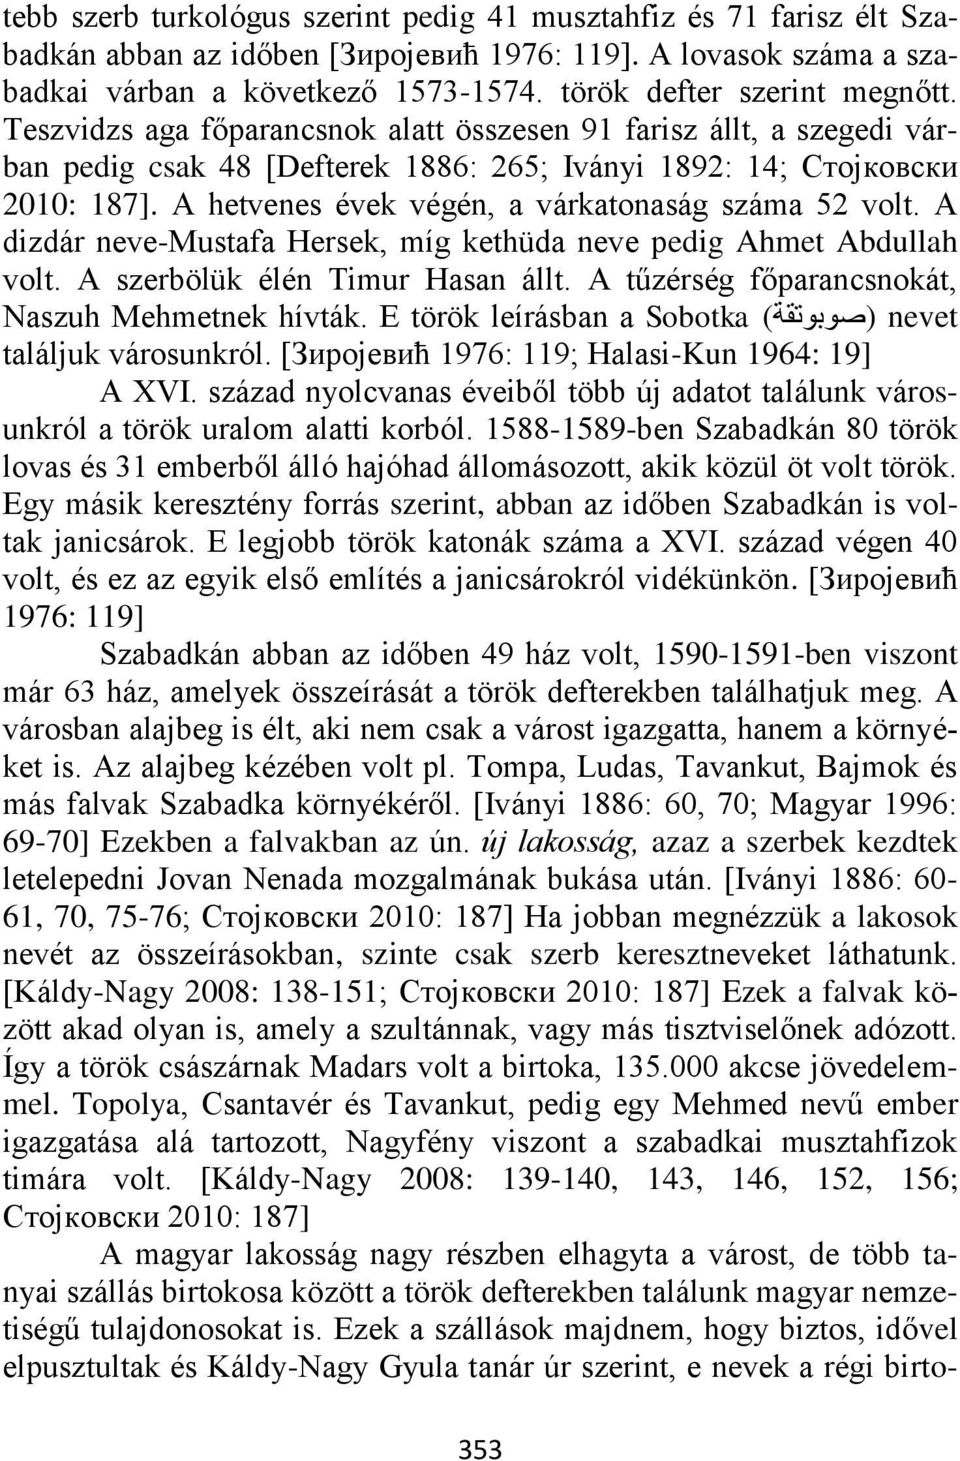 A hetvenes évek végén, a várkatonaság száma 52 volt. A dizdár neve-mustafa Hersek, míg kethüda neve pedig Ahmet Abdullah volt. A szerbölük élén Timur Hasan állt.